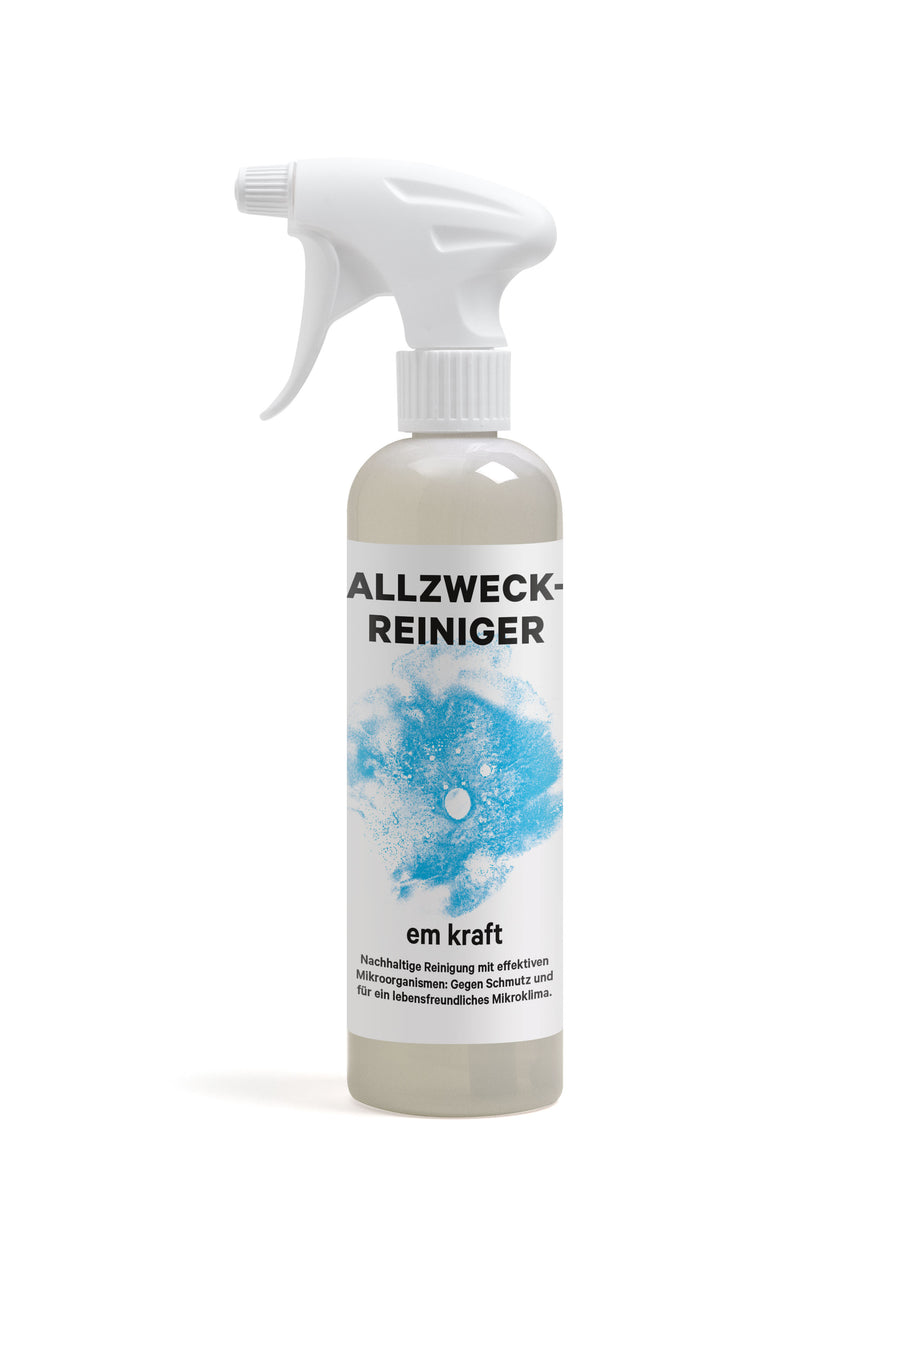 em kraft Allzweckreiniger Spray Flasche 500ml biologischer probiotischer Reiniger aus 100% nachwachsenden Rohstoffen Swiss Made